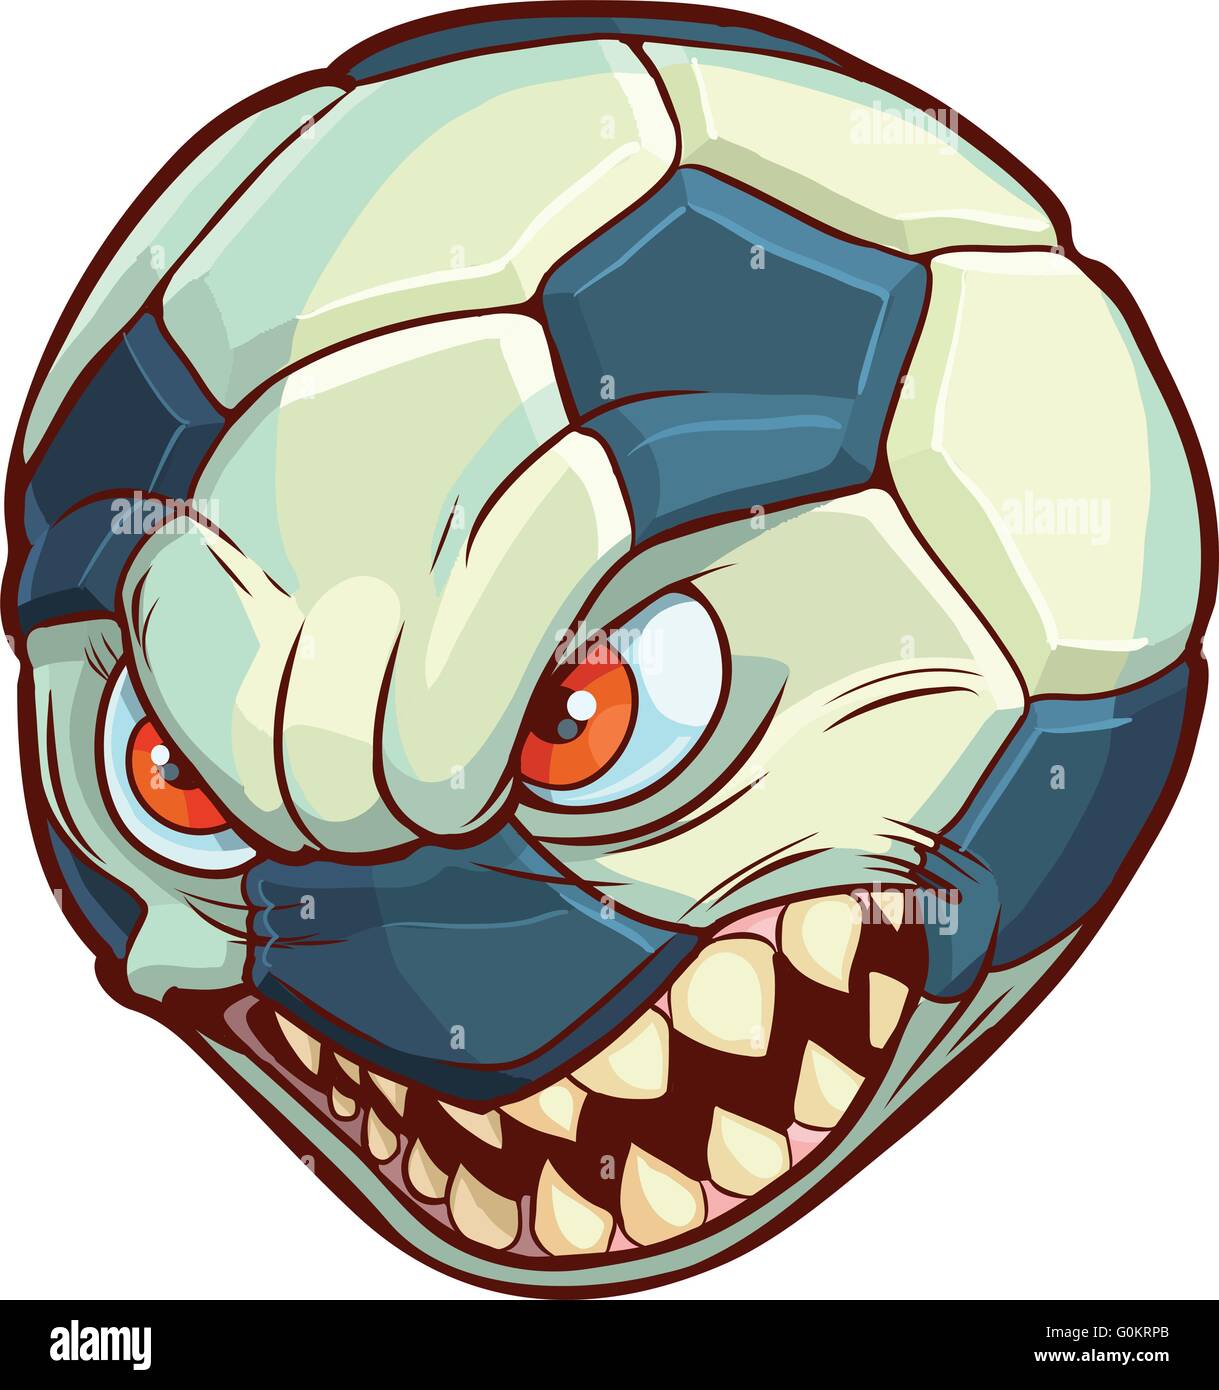 Vector cartoon clip art illustrazione di un pallone da calcio o il calcio con un mezzo volto con occhi rossi e denti affilati. Illustrazione Vettoriale